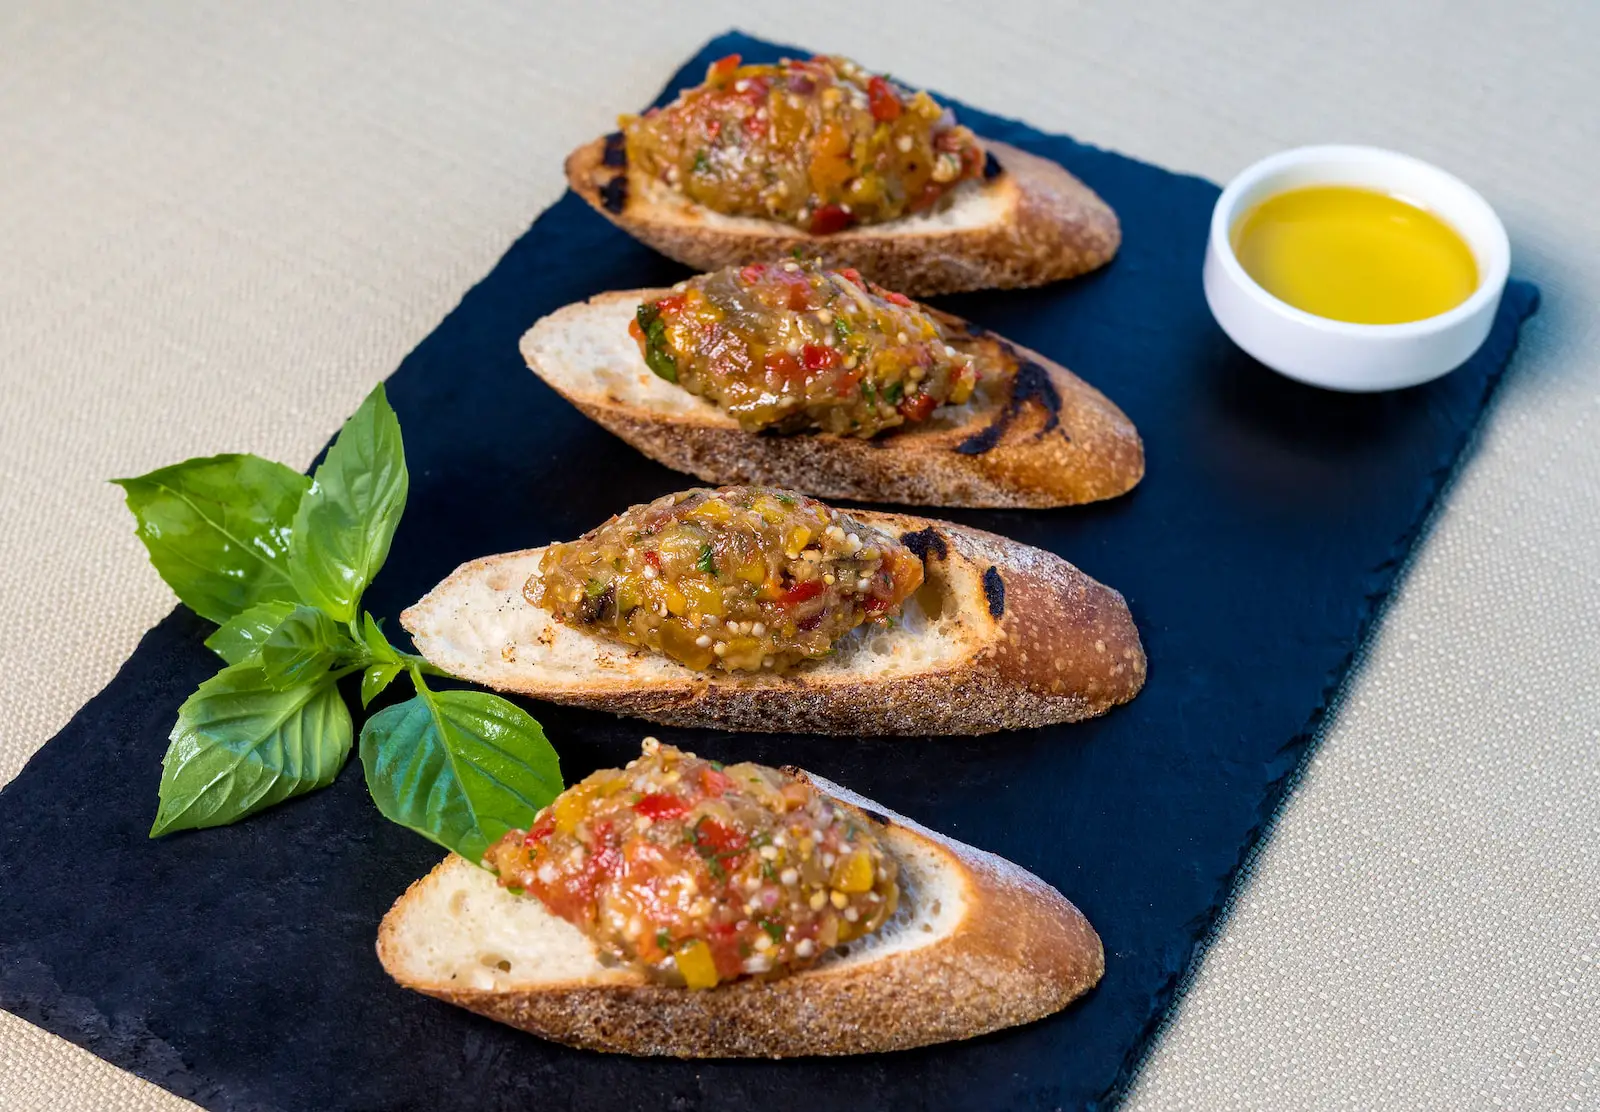 bread with vegetable on blue plate - tapas grenache vs merlot